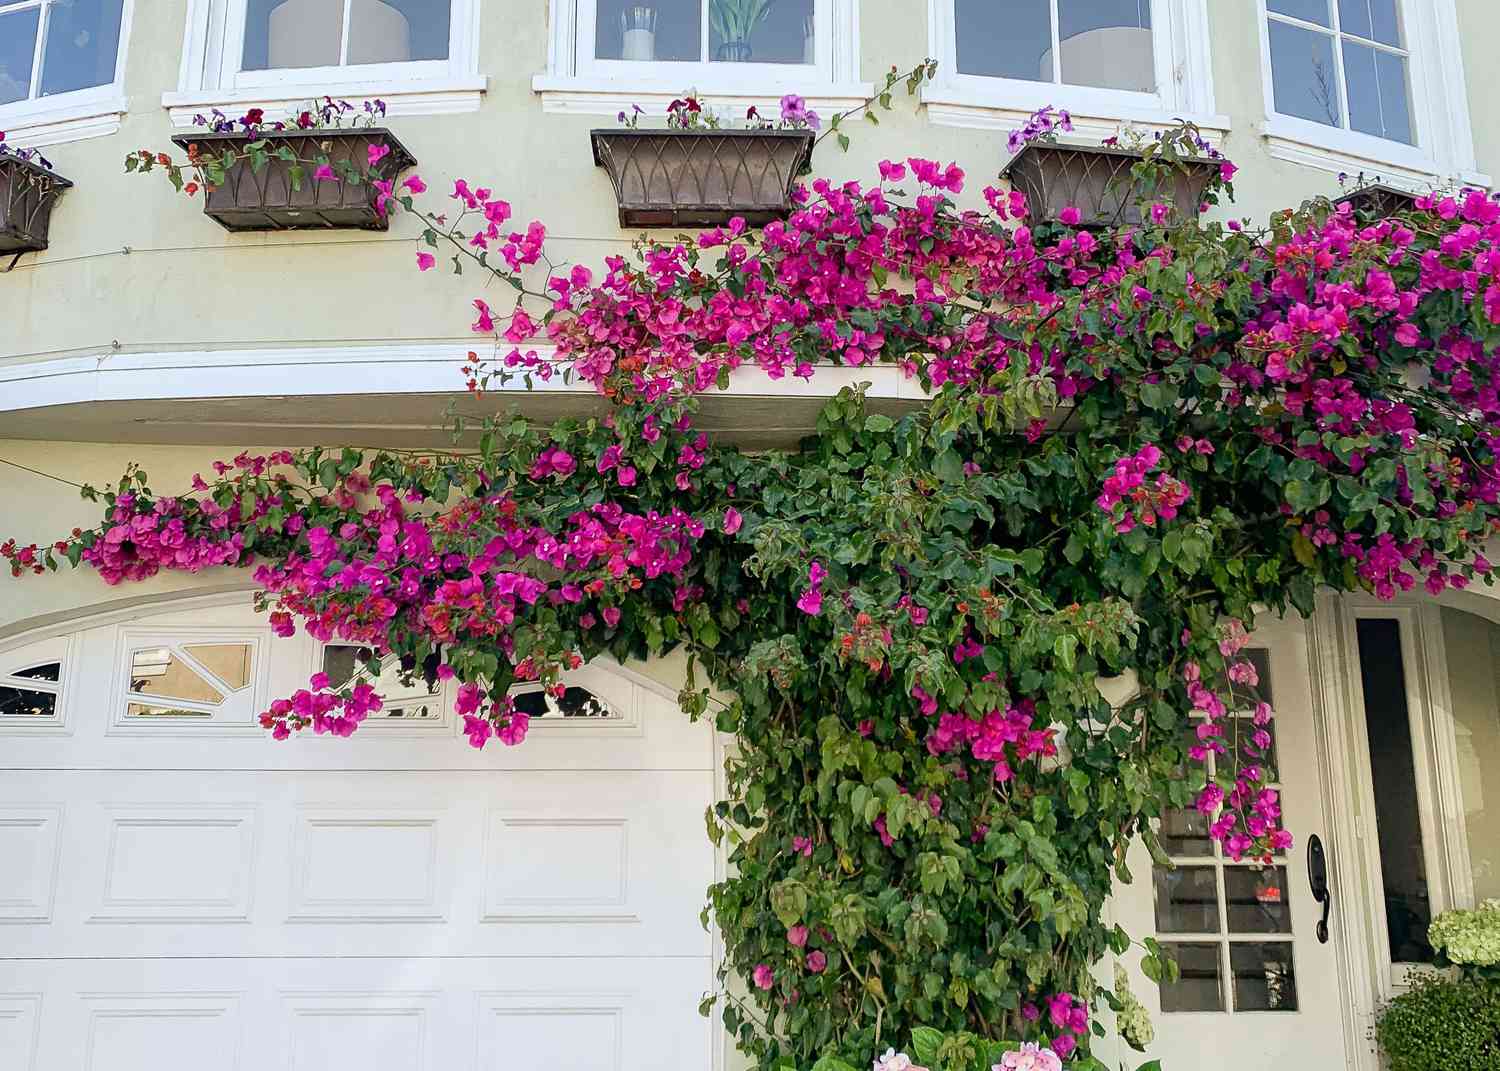 Trepadeira buganvília com brácteas de flores magenta escalando o exterior da casa